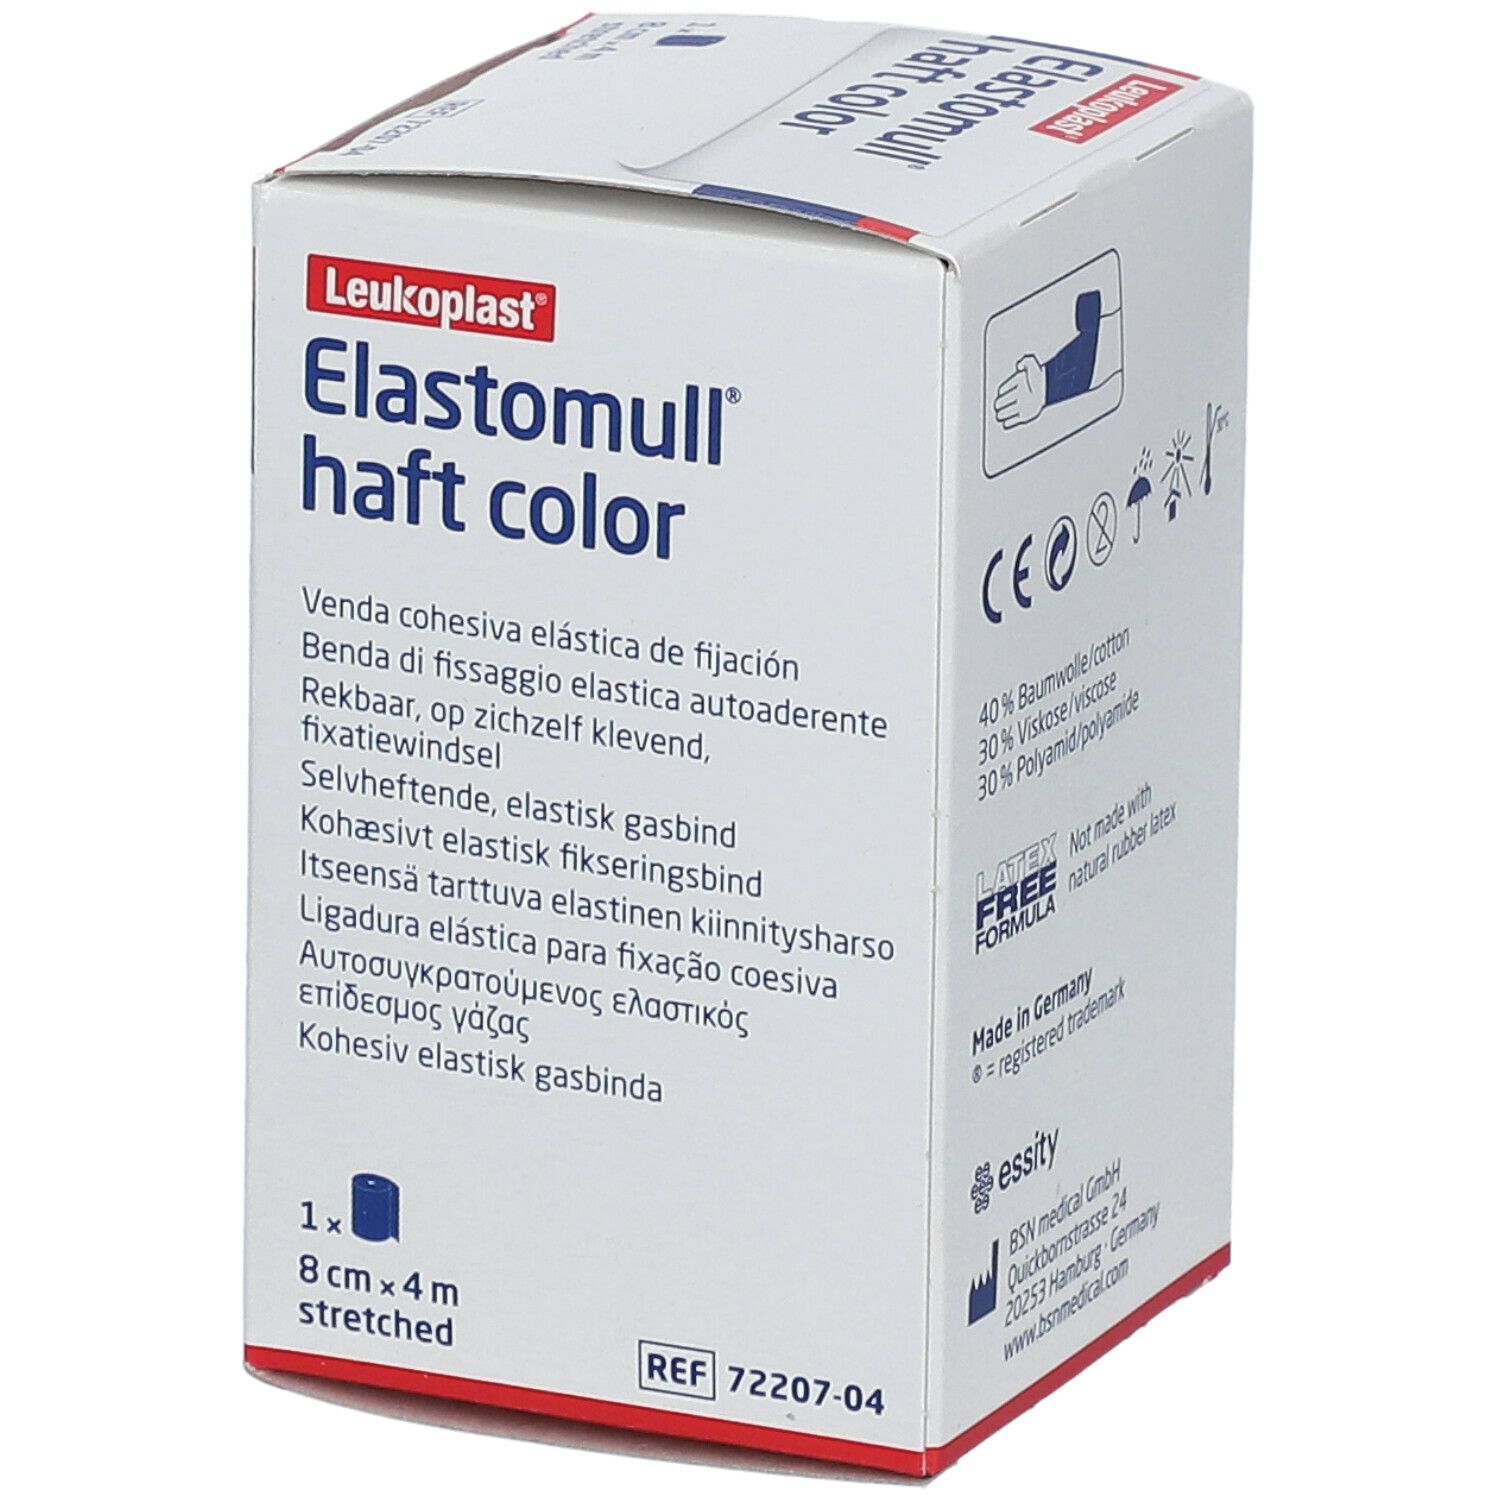 Elastomull® haft color 8 cm x 4 m blau